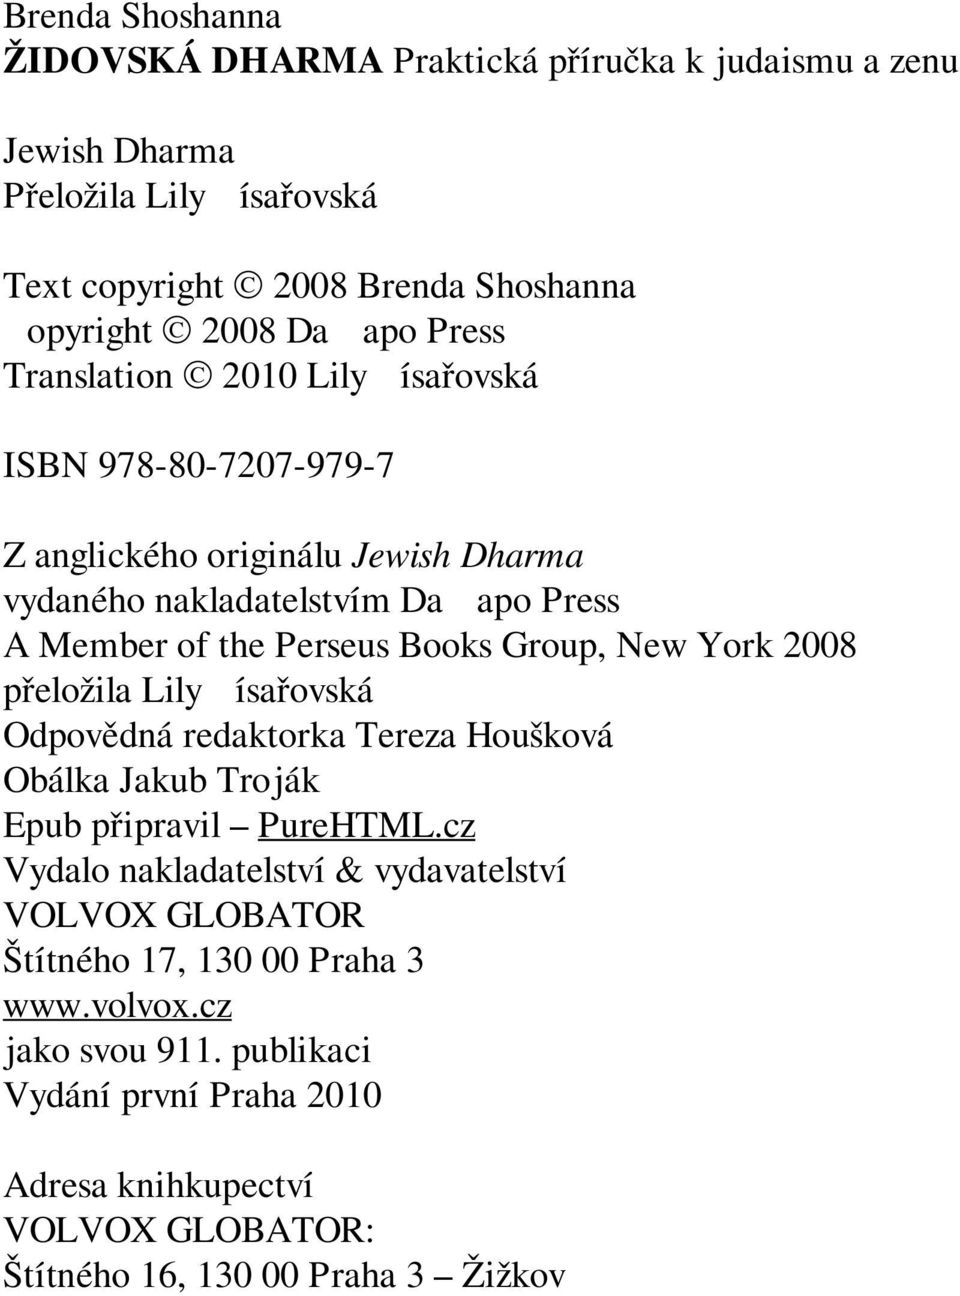 Group, New York 2008 přeložila Lily Císařovská Odpovědná redaktorka Tereza Houšková Obálka Jakub Troják Epub připravil PureHTML.